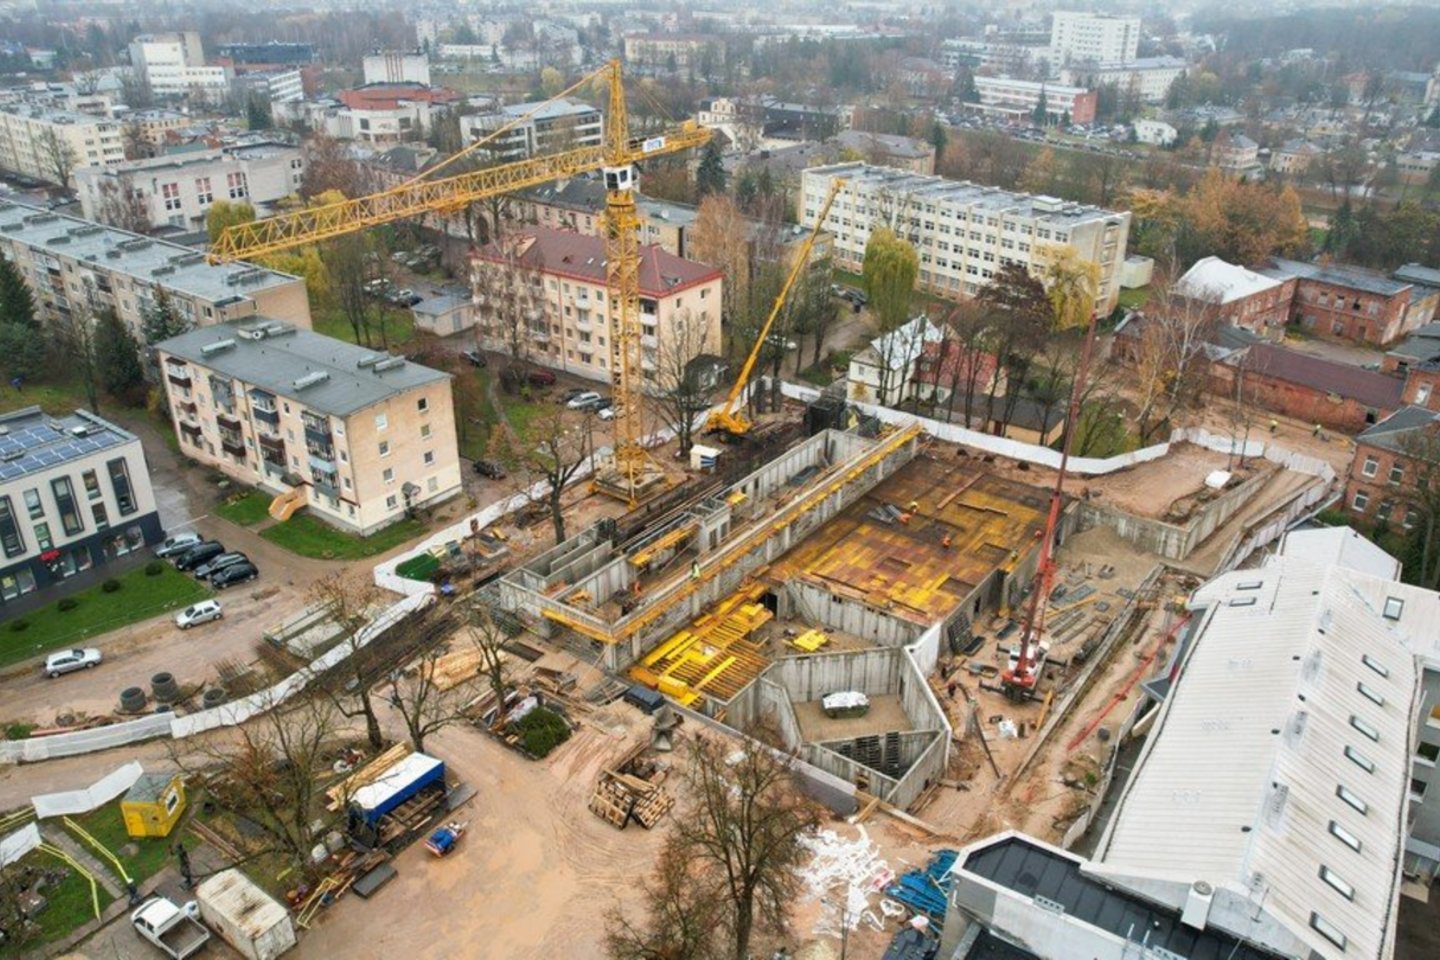 S. Eidrigevičiaus menų centro statybos darbai įsibėgėja: perspėja dėl padidėjusio triukšmo lygio.<br>Rimvydo Ančerevičiaus, Vilmanto Bieliūno nuotr.